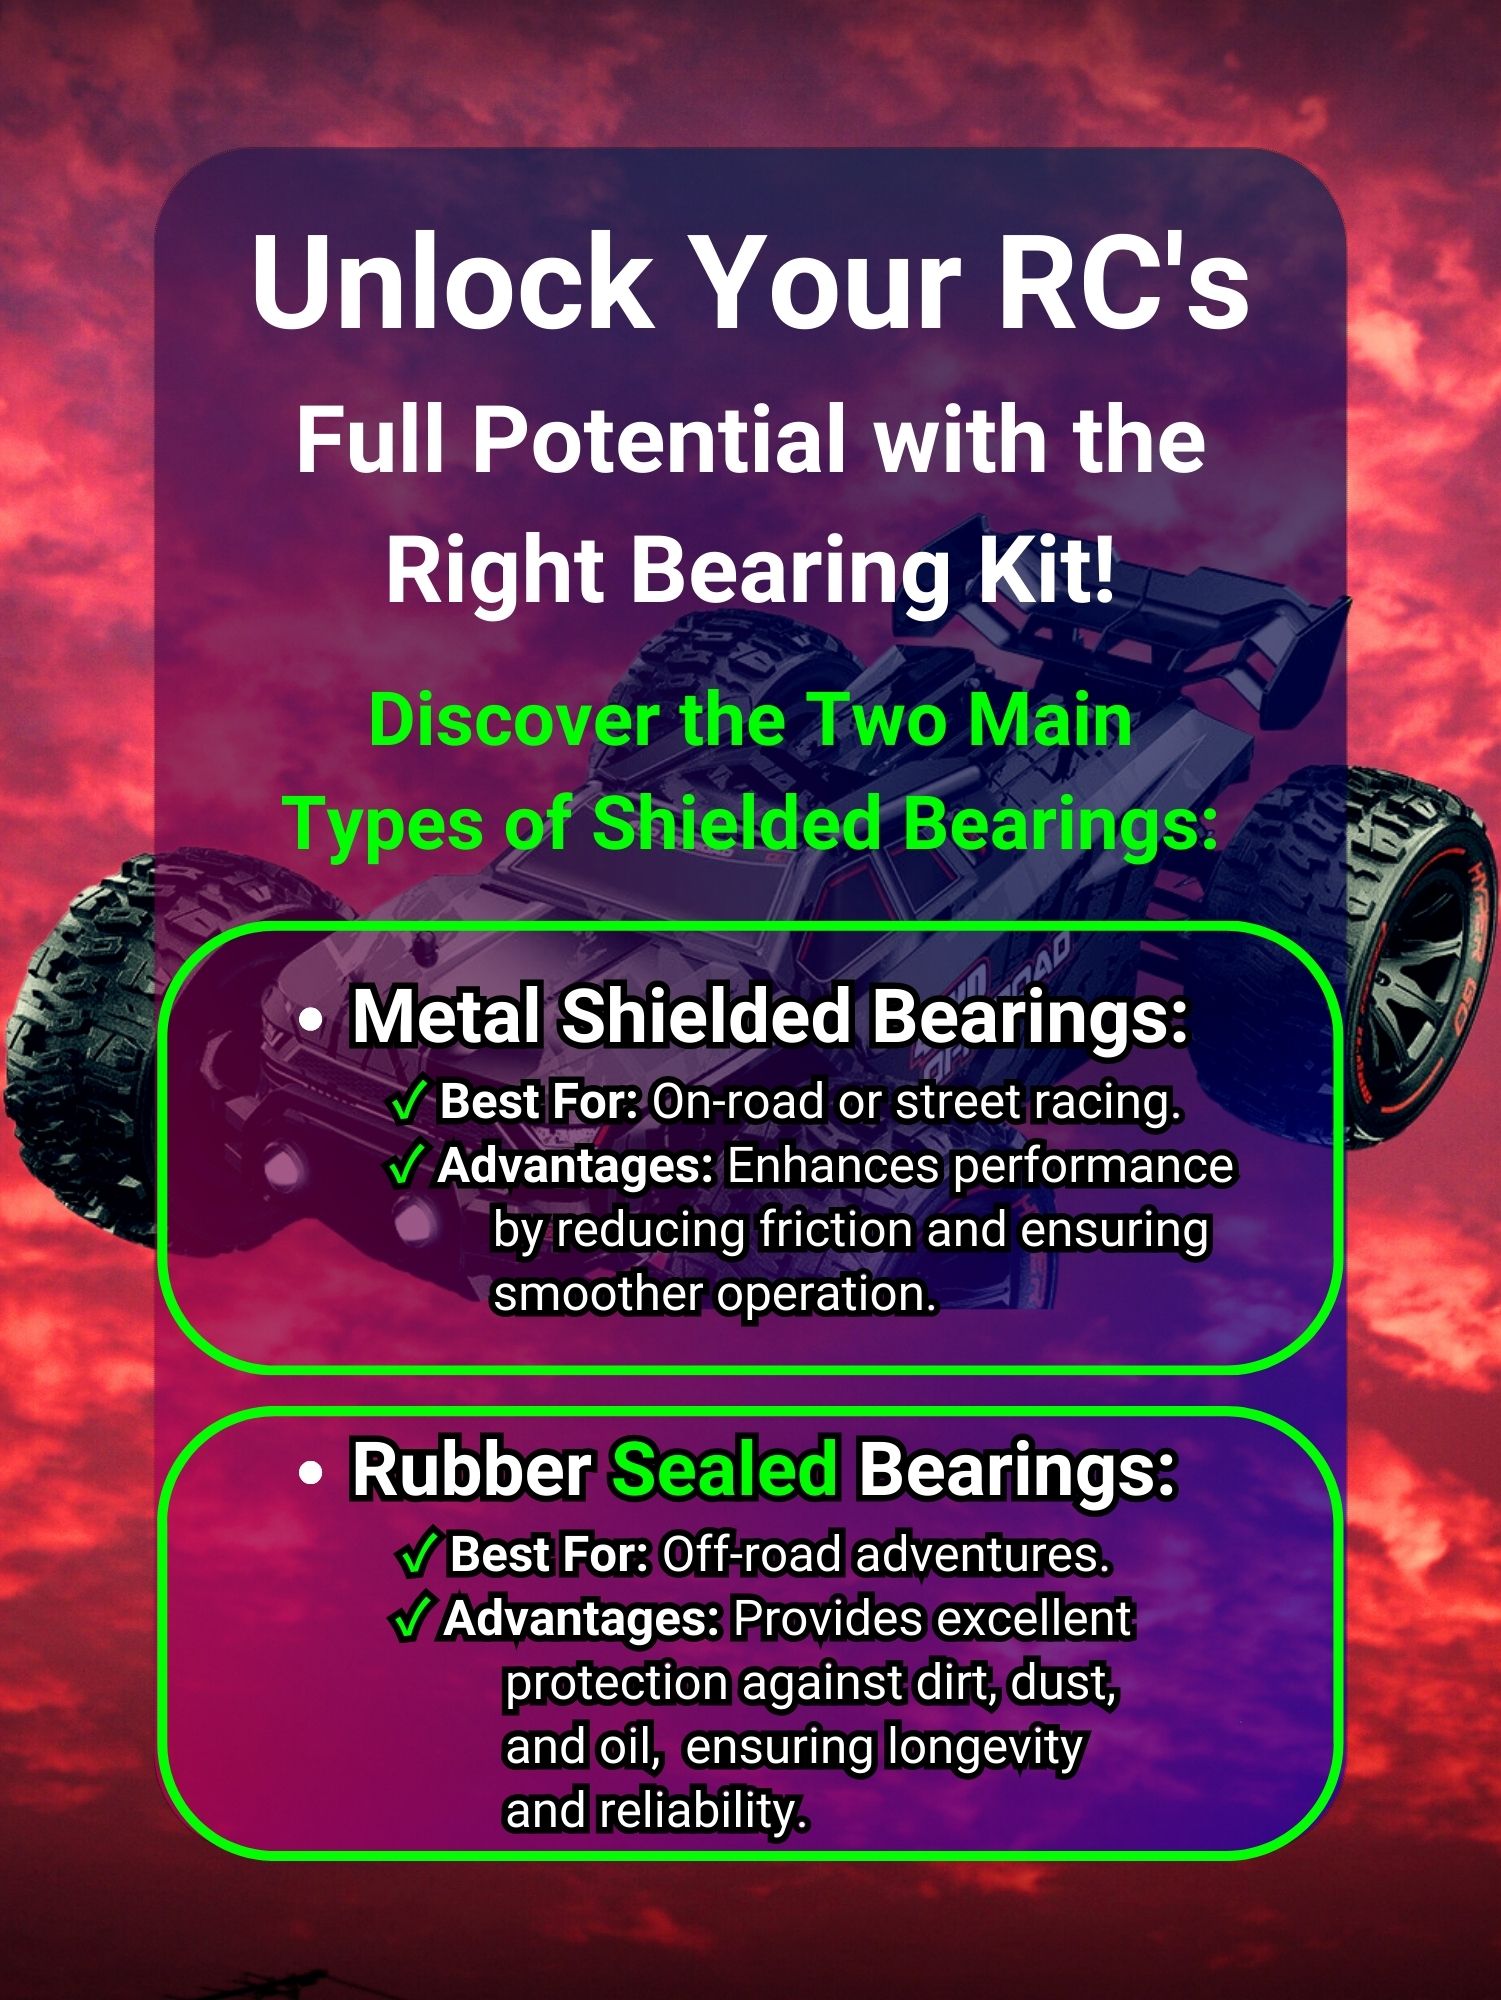 RCScrewZ Metal Shielded Bearings 3rac007b for 3 Racing Sakura Xi/Sport 1/10 Kit - Picture 2 of 12